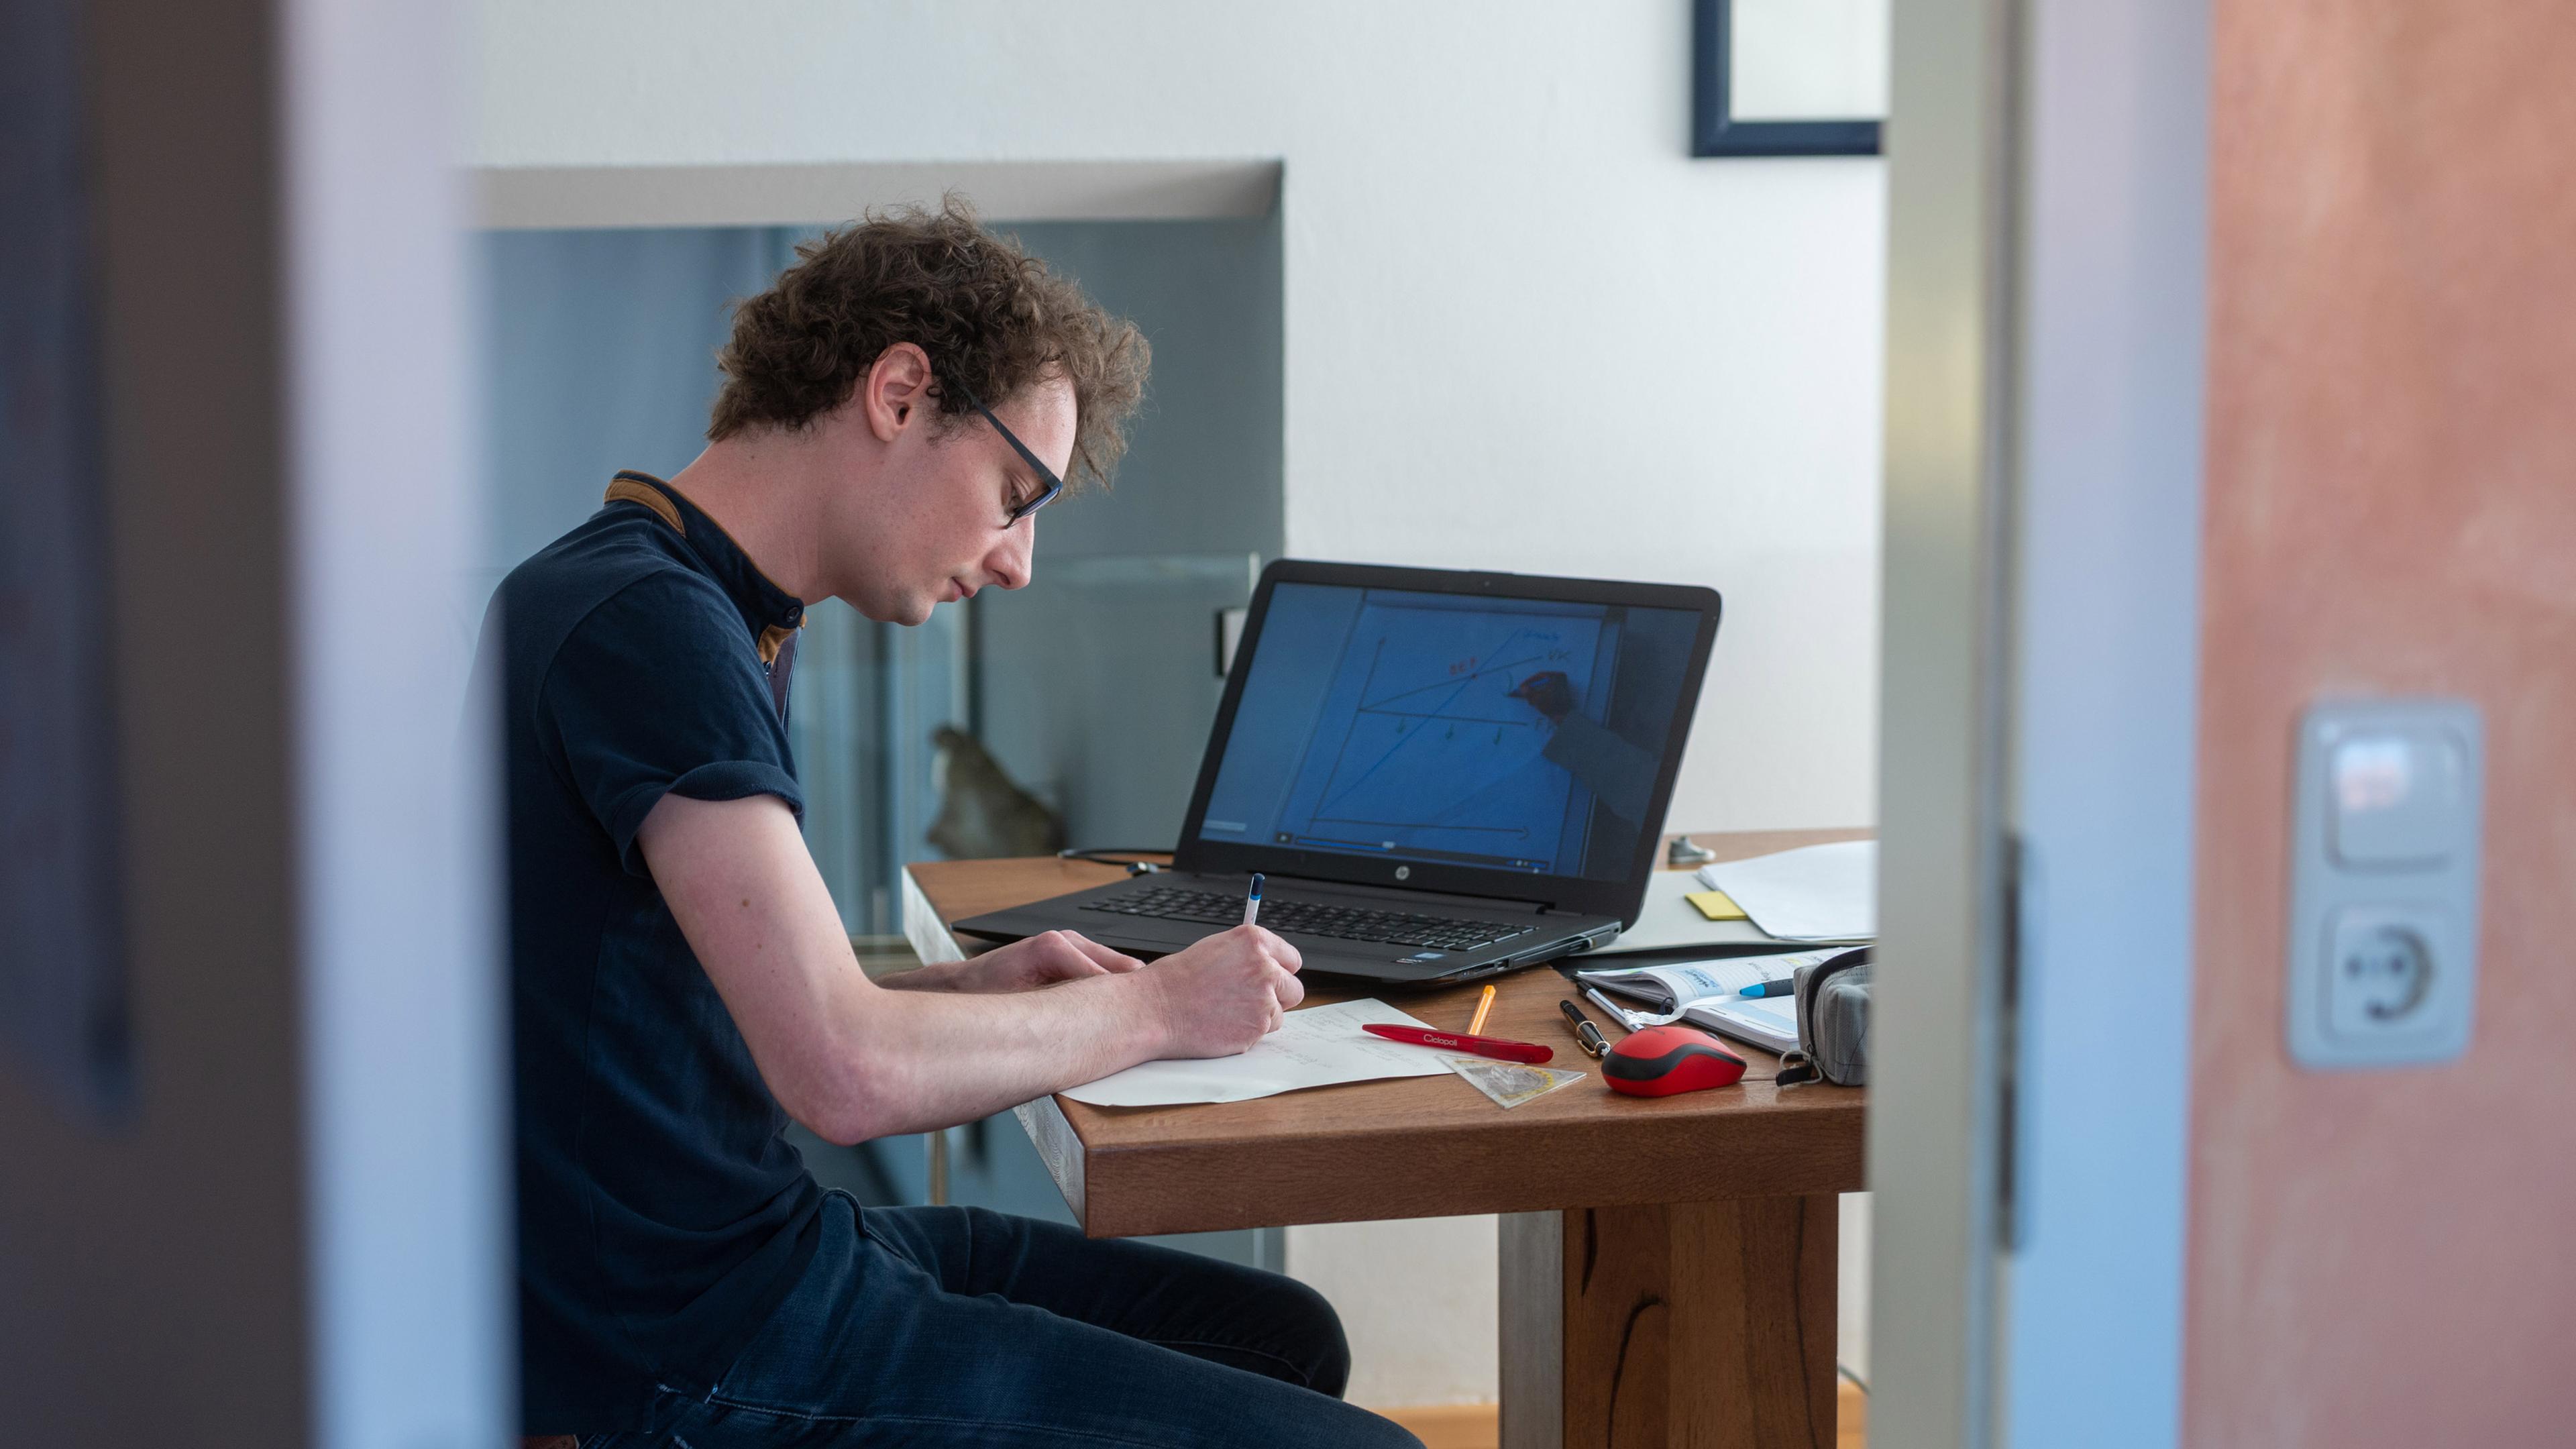 : Ein Student arbeitet zu Hause an seinem Laptop für die Uni. Er schreibt auf einen Zettel, auf dem Laptop läuft eine Vorlesung und um ihn herum auf dem Tisch liegen Stifte, ein Geodreieck, eine Maus, ein Buch und ein Federmäppchen.